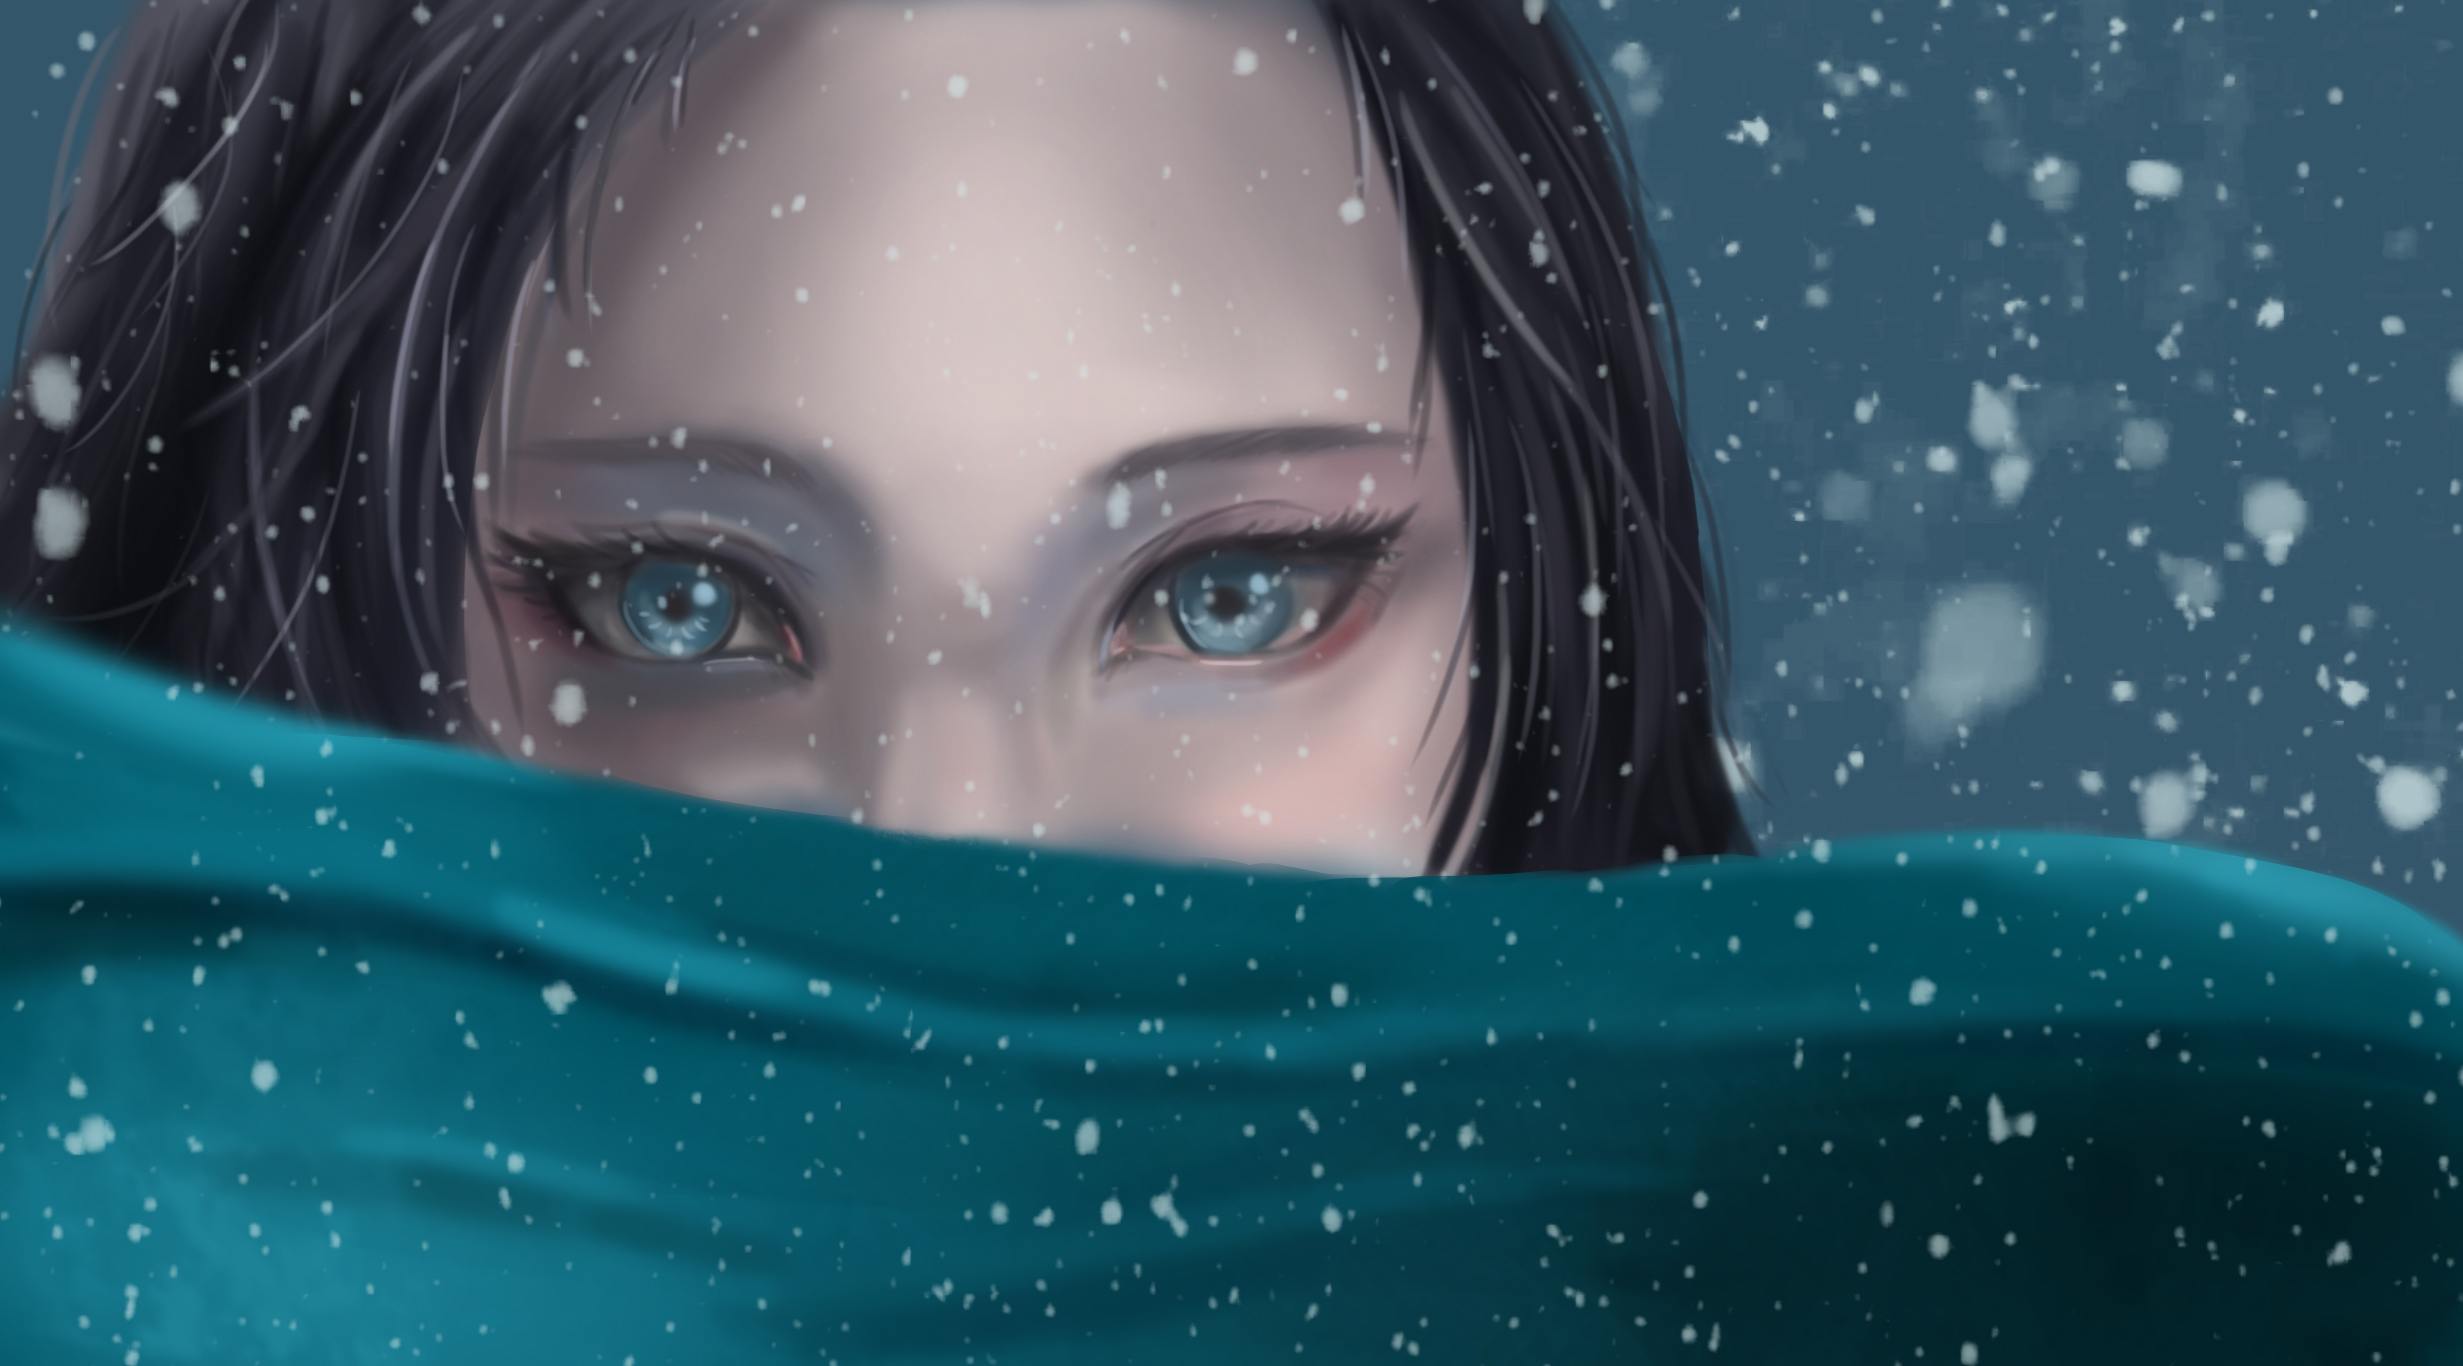 雪花飘落 蓝色眼睛的动漫女孩